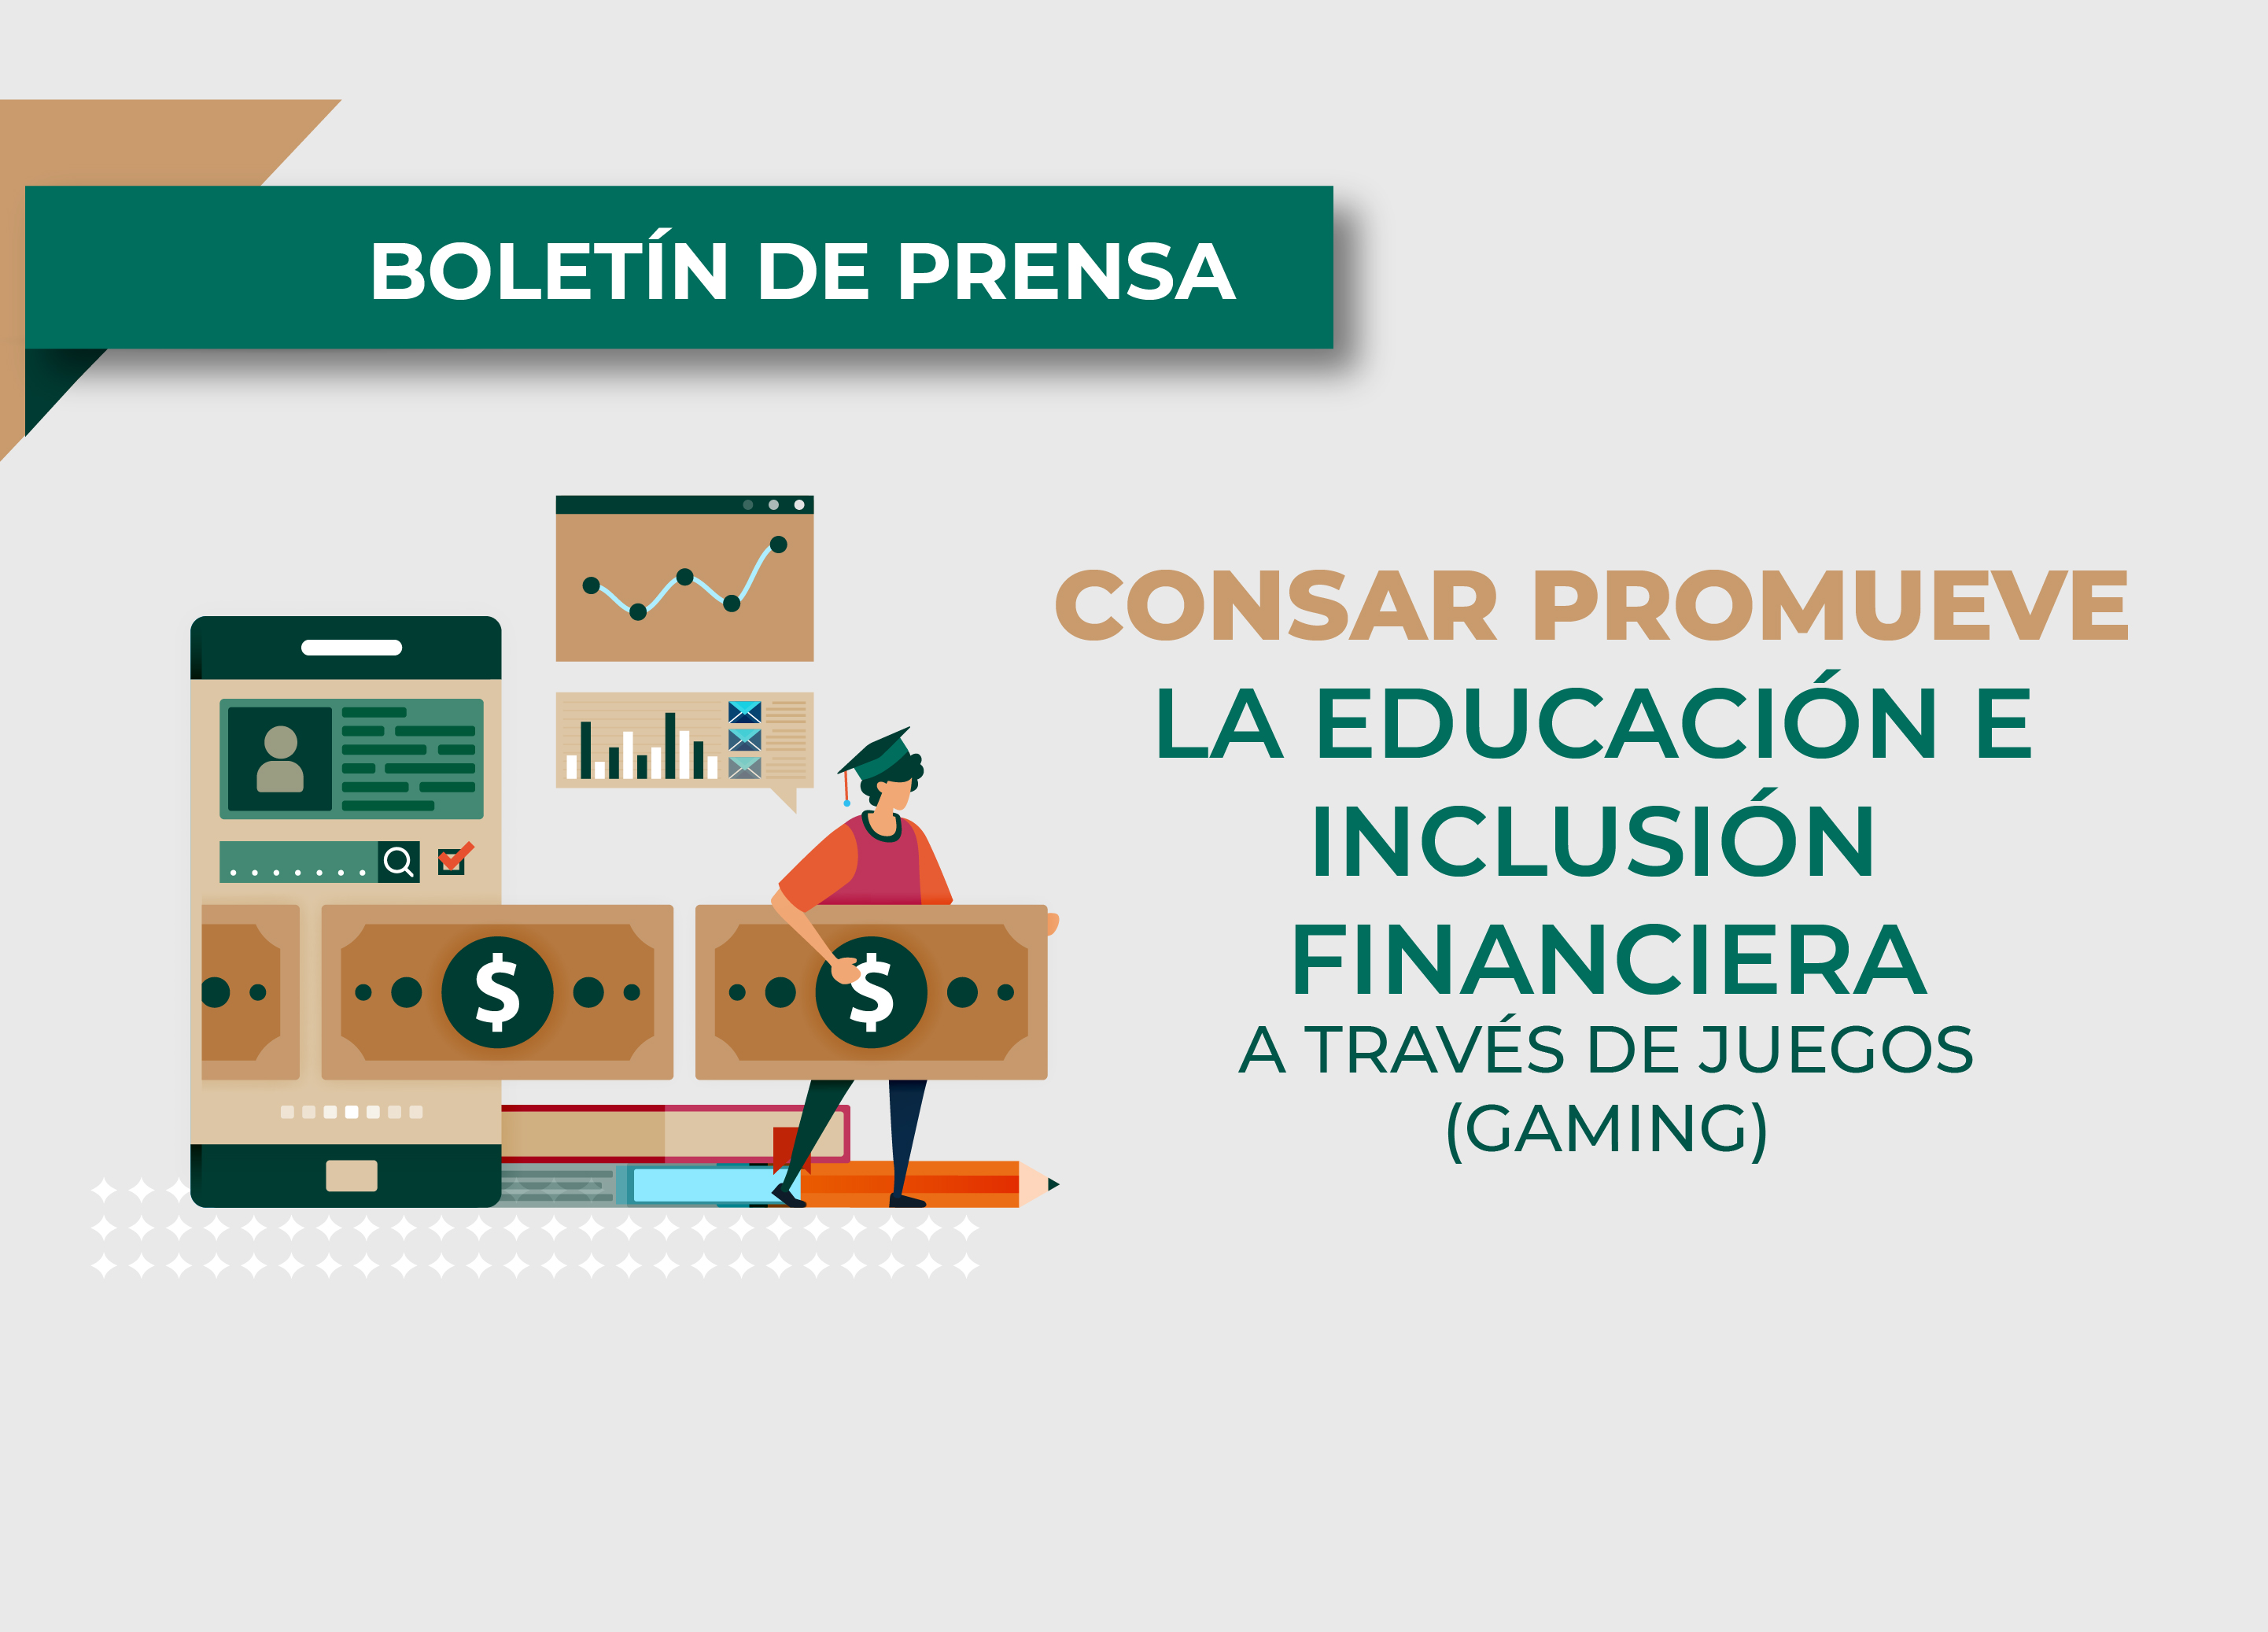 CONSAR promueve la educación e inclusión financiera de la mano de la Fintech ALFI.